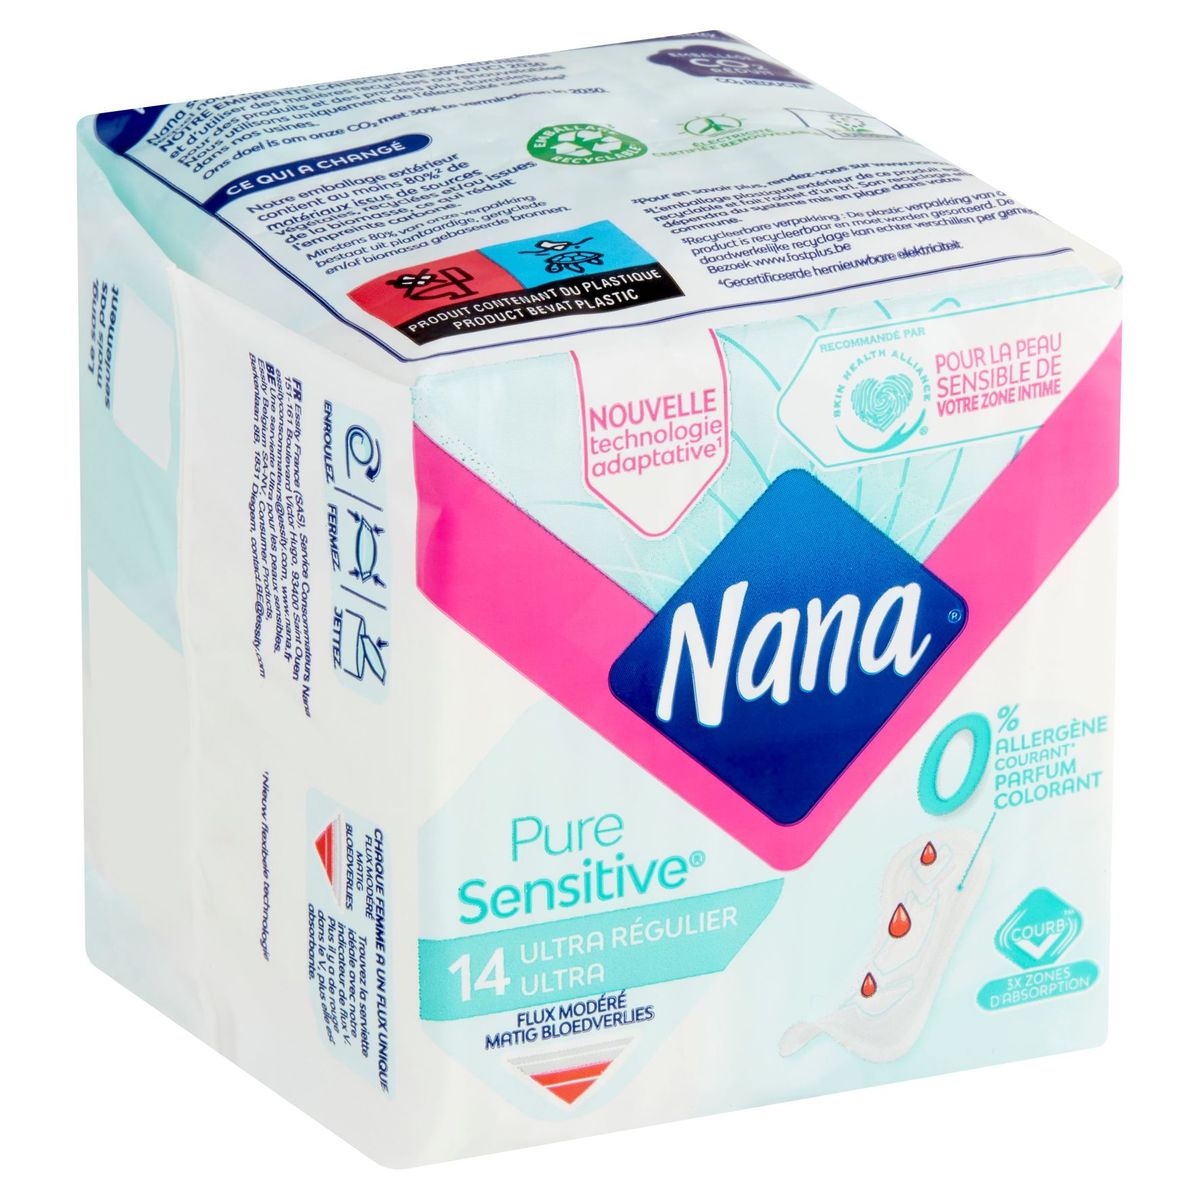 Nana Pure Sensitive Ultra Régulier/Normal Flux Modéré 14 Pces